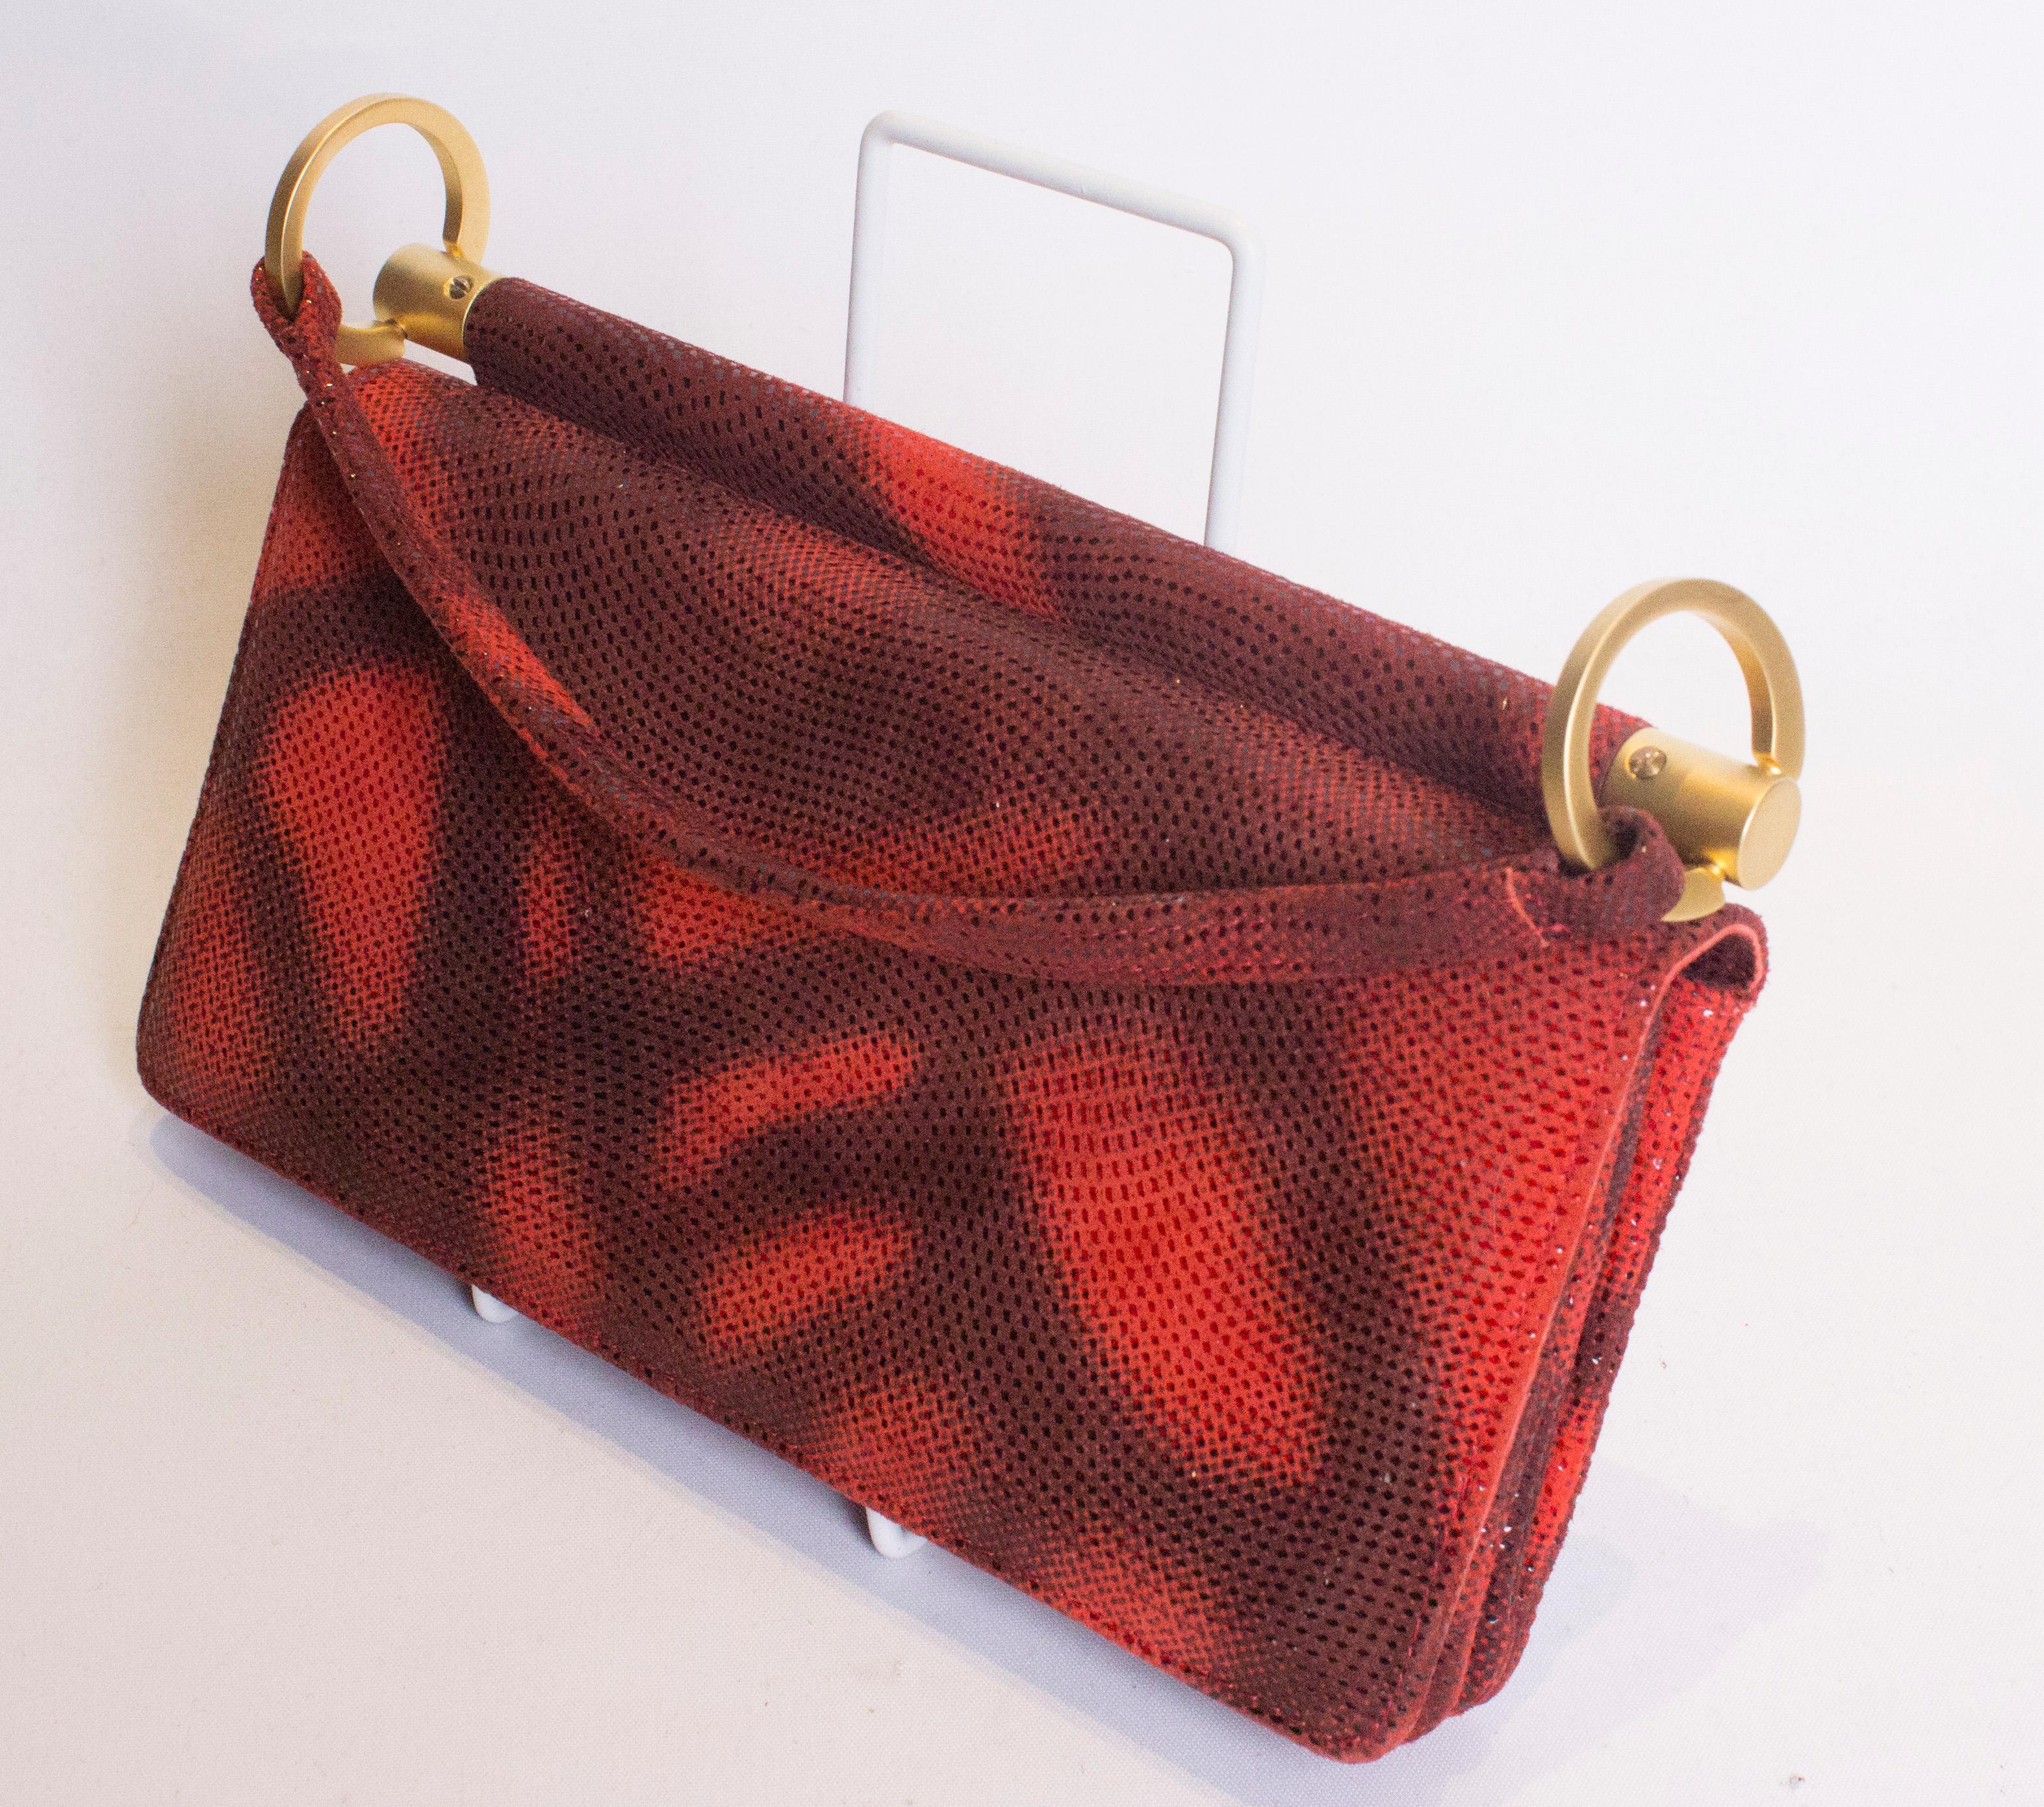 Un sac à main vintage chic de Charles Jourdan. Le sac est d'une magnifique couleur rouge et comporte trois compartiments internes, chacun doté d'une pochette.  Il est muni d'un rabat sur le devant et d'une poignée chic. Dimensions : largeur 8